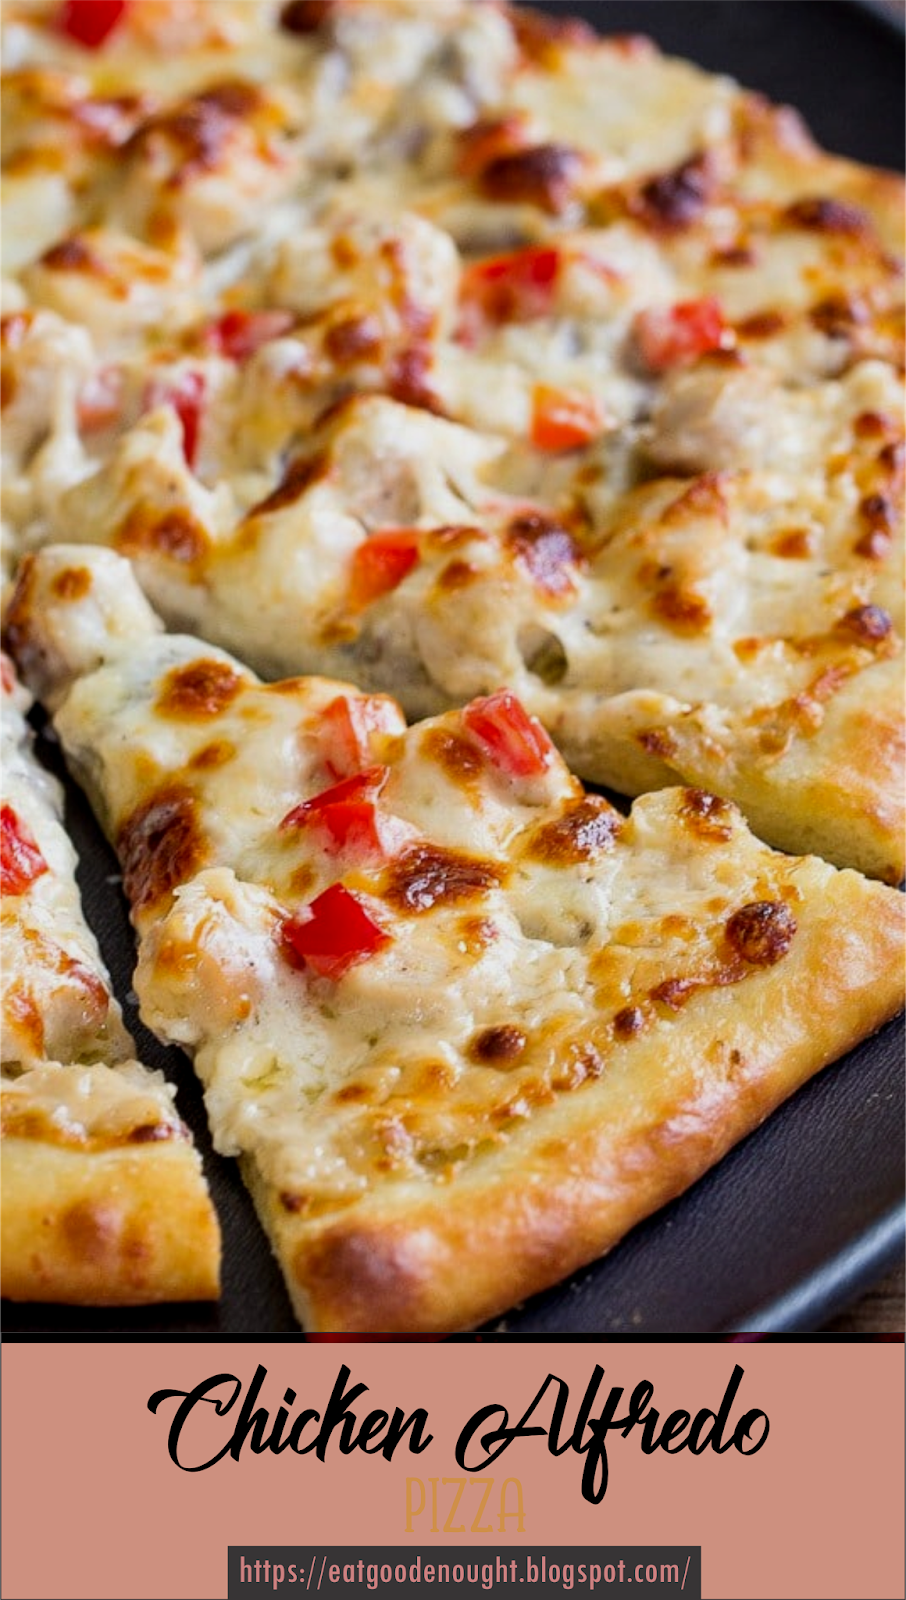 самые простые рецепты пиццы в домашних условиях с фото фото 106